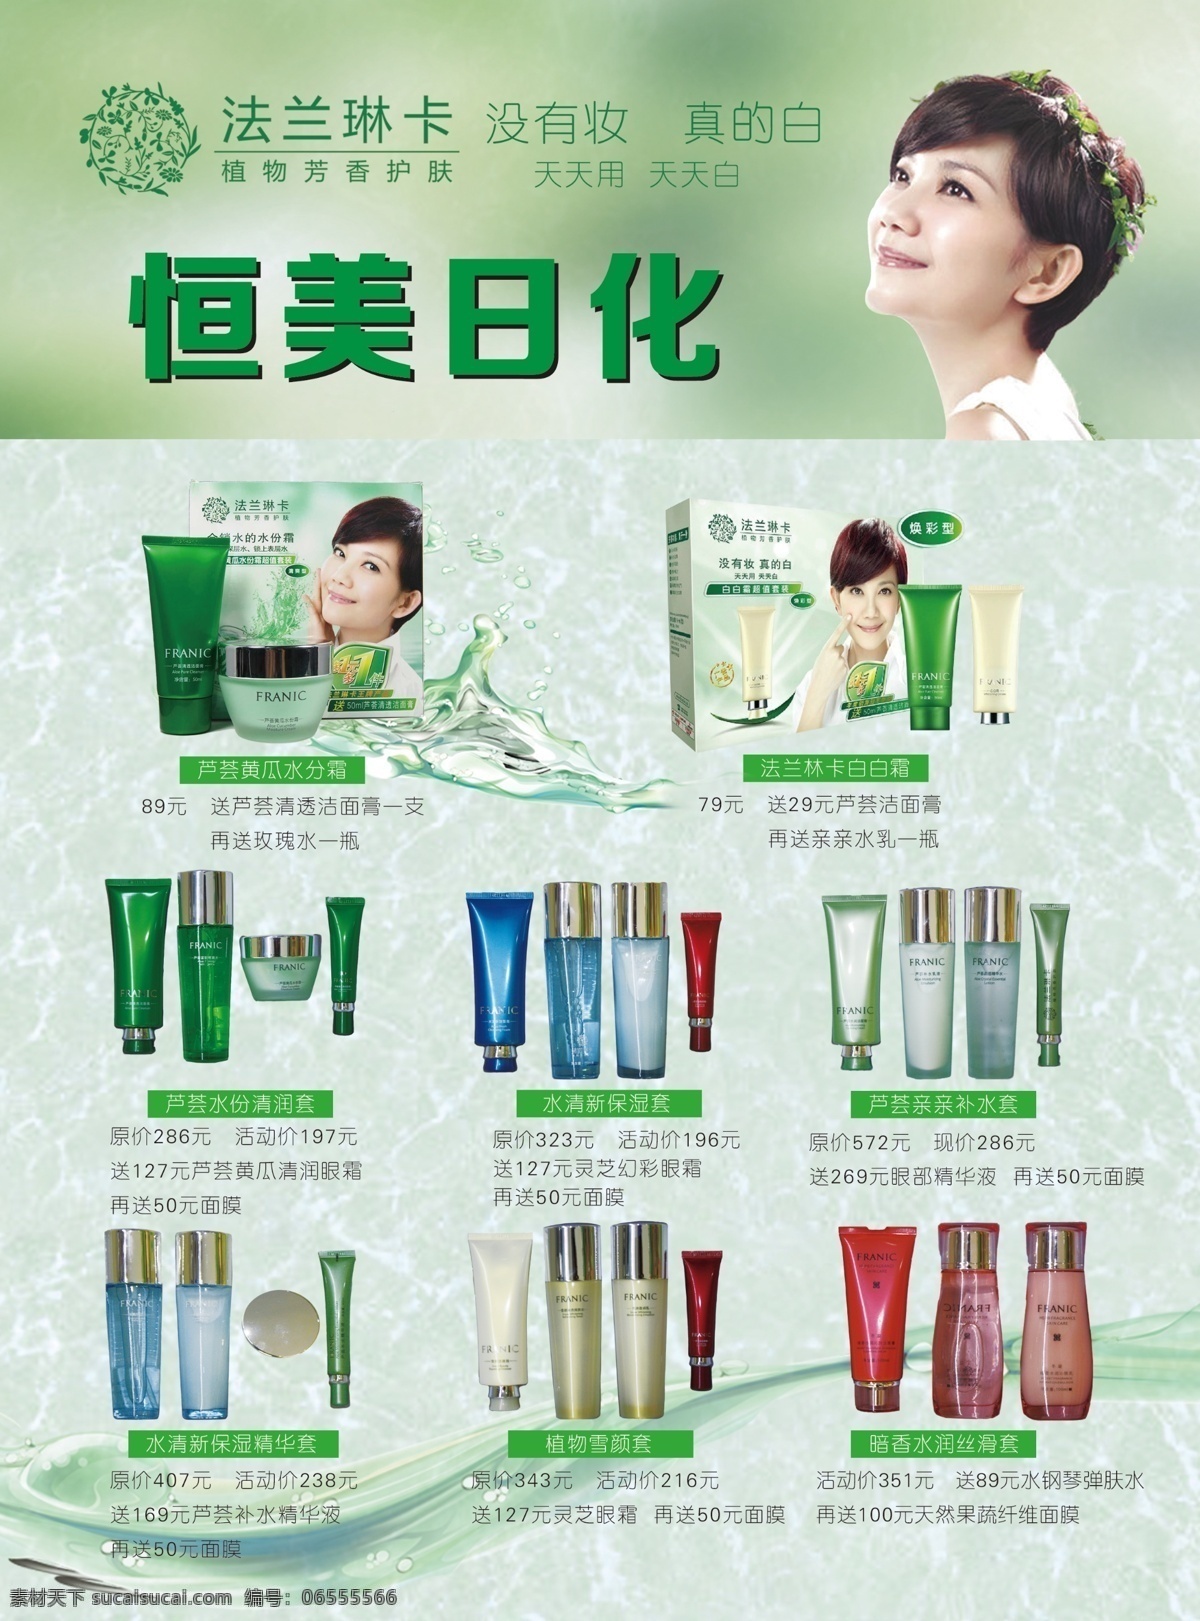 法莱琳卡 梁静茹 化妆品 绿色 溅起的水花 绿色的叶子 美容美体 做美容的人 化妆品宣传单 dm宣传单